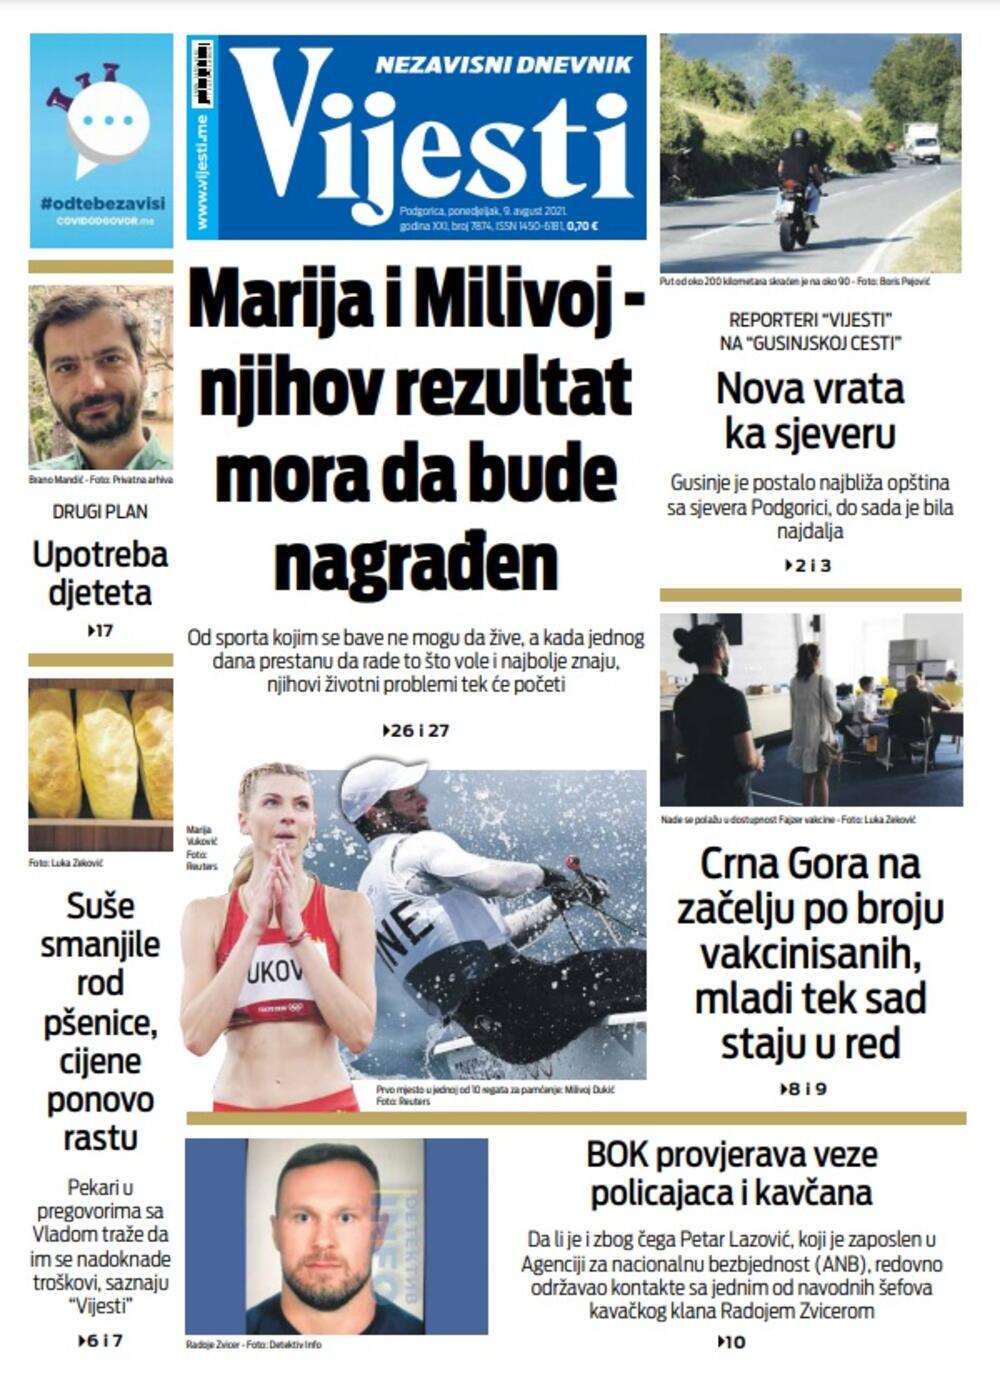 Naslovna strana "Vijesti" za 9. avgust 2021., Foto: Vijesti